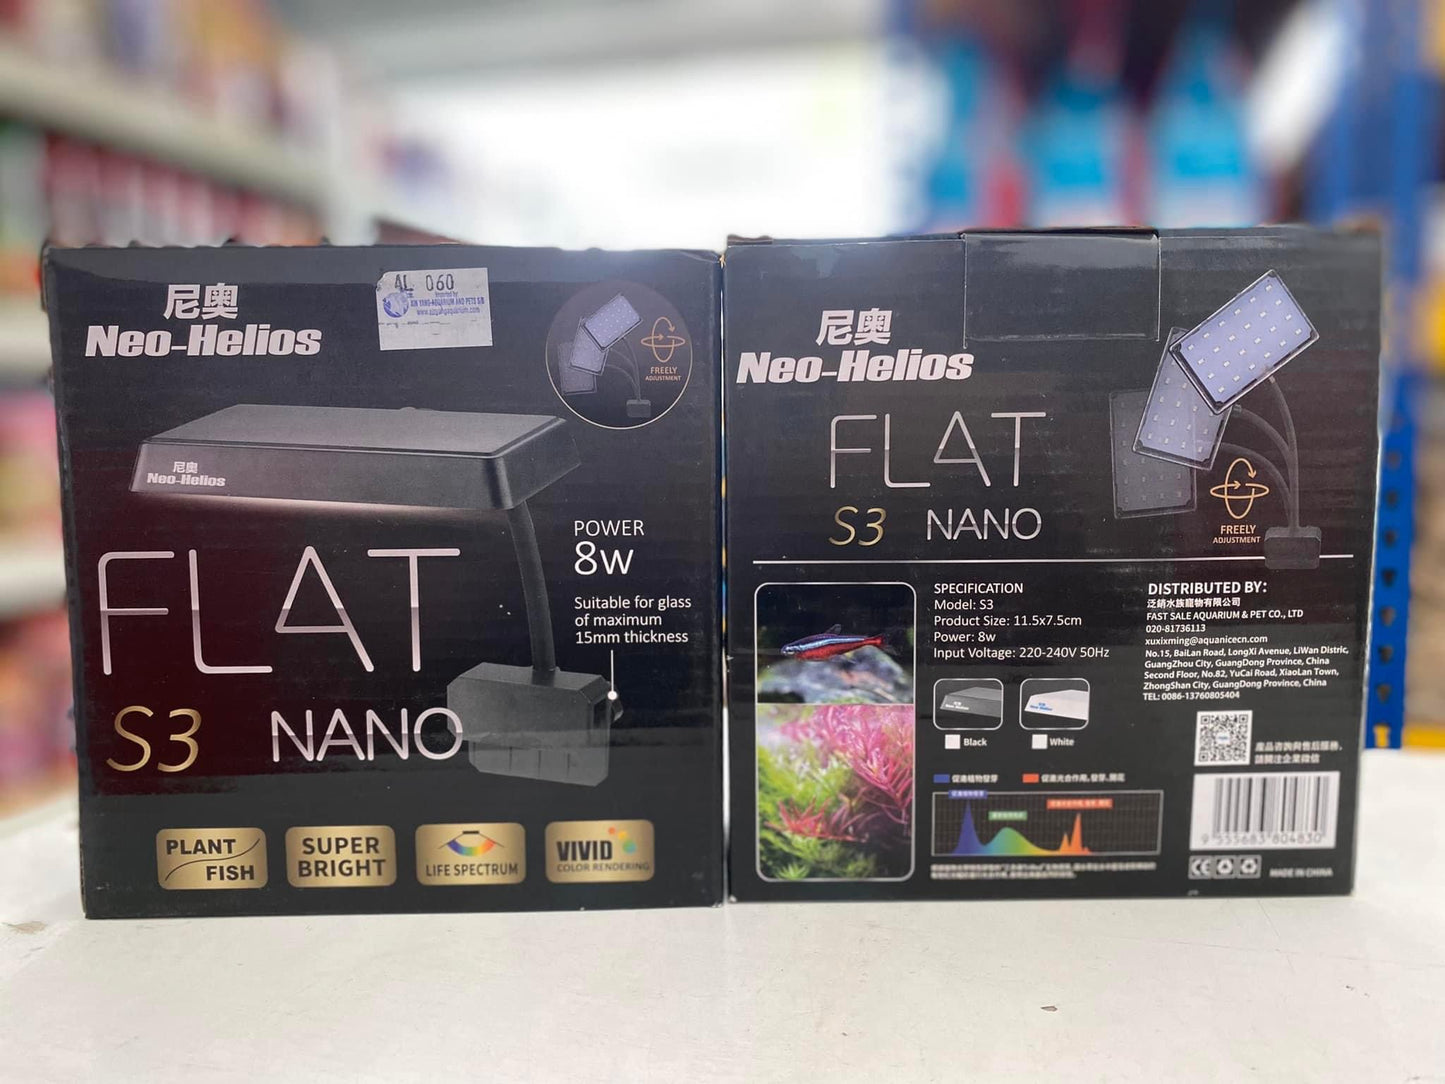 Neo Helios Flat Nano S3 Plus, 13W Full Spectrum Planted Tank Aquarium Light